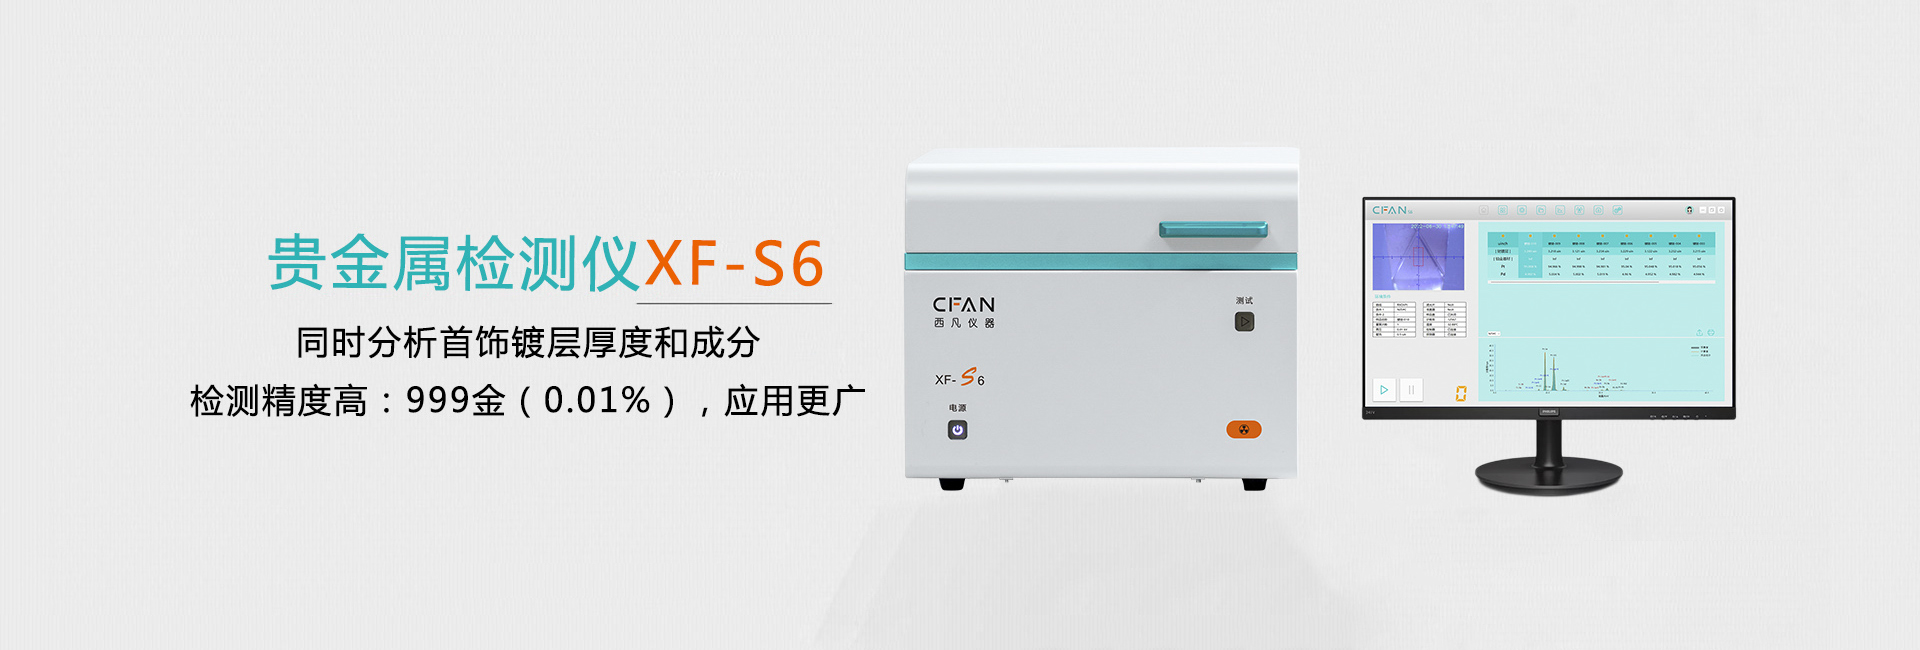 西凡贵金属检测仪XF-S6